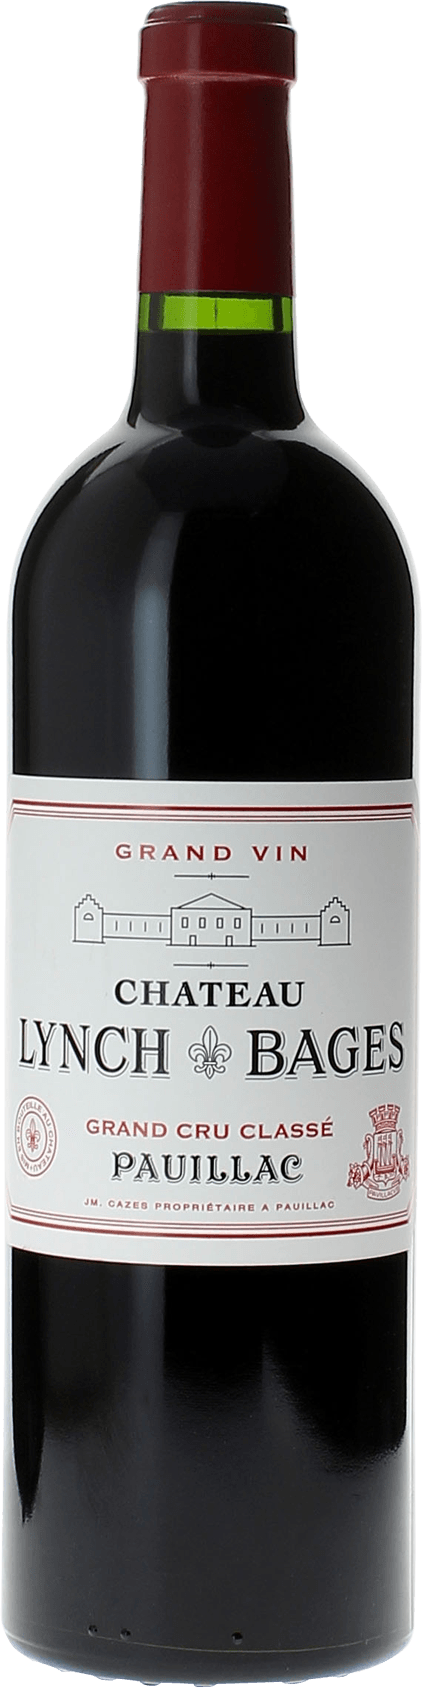 Lynch bages 1994 5 me Grand cru class Pauillac, Bordeaux rouge